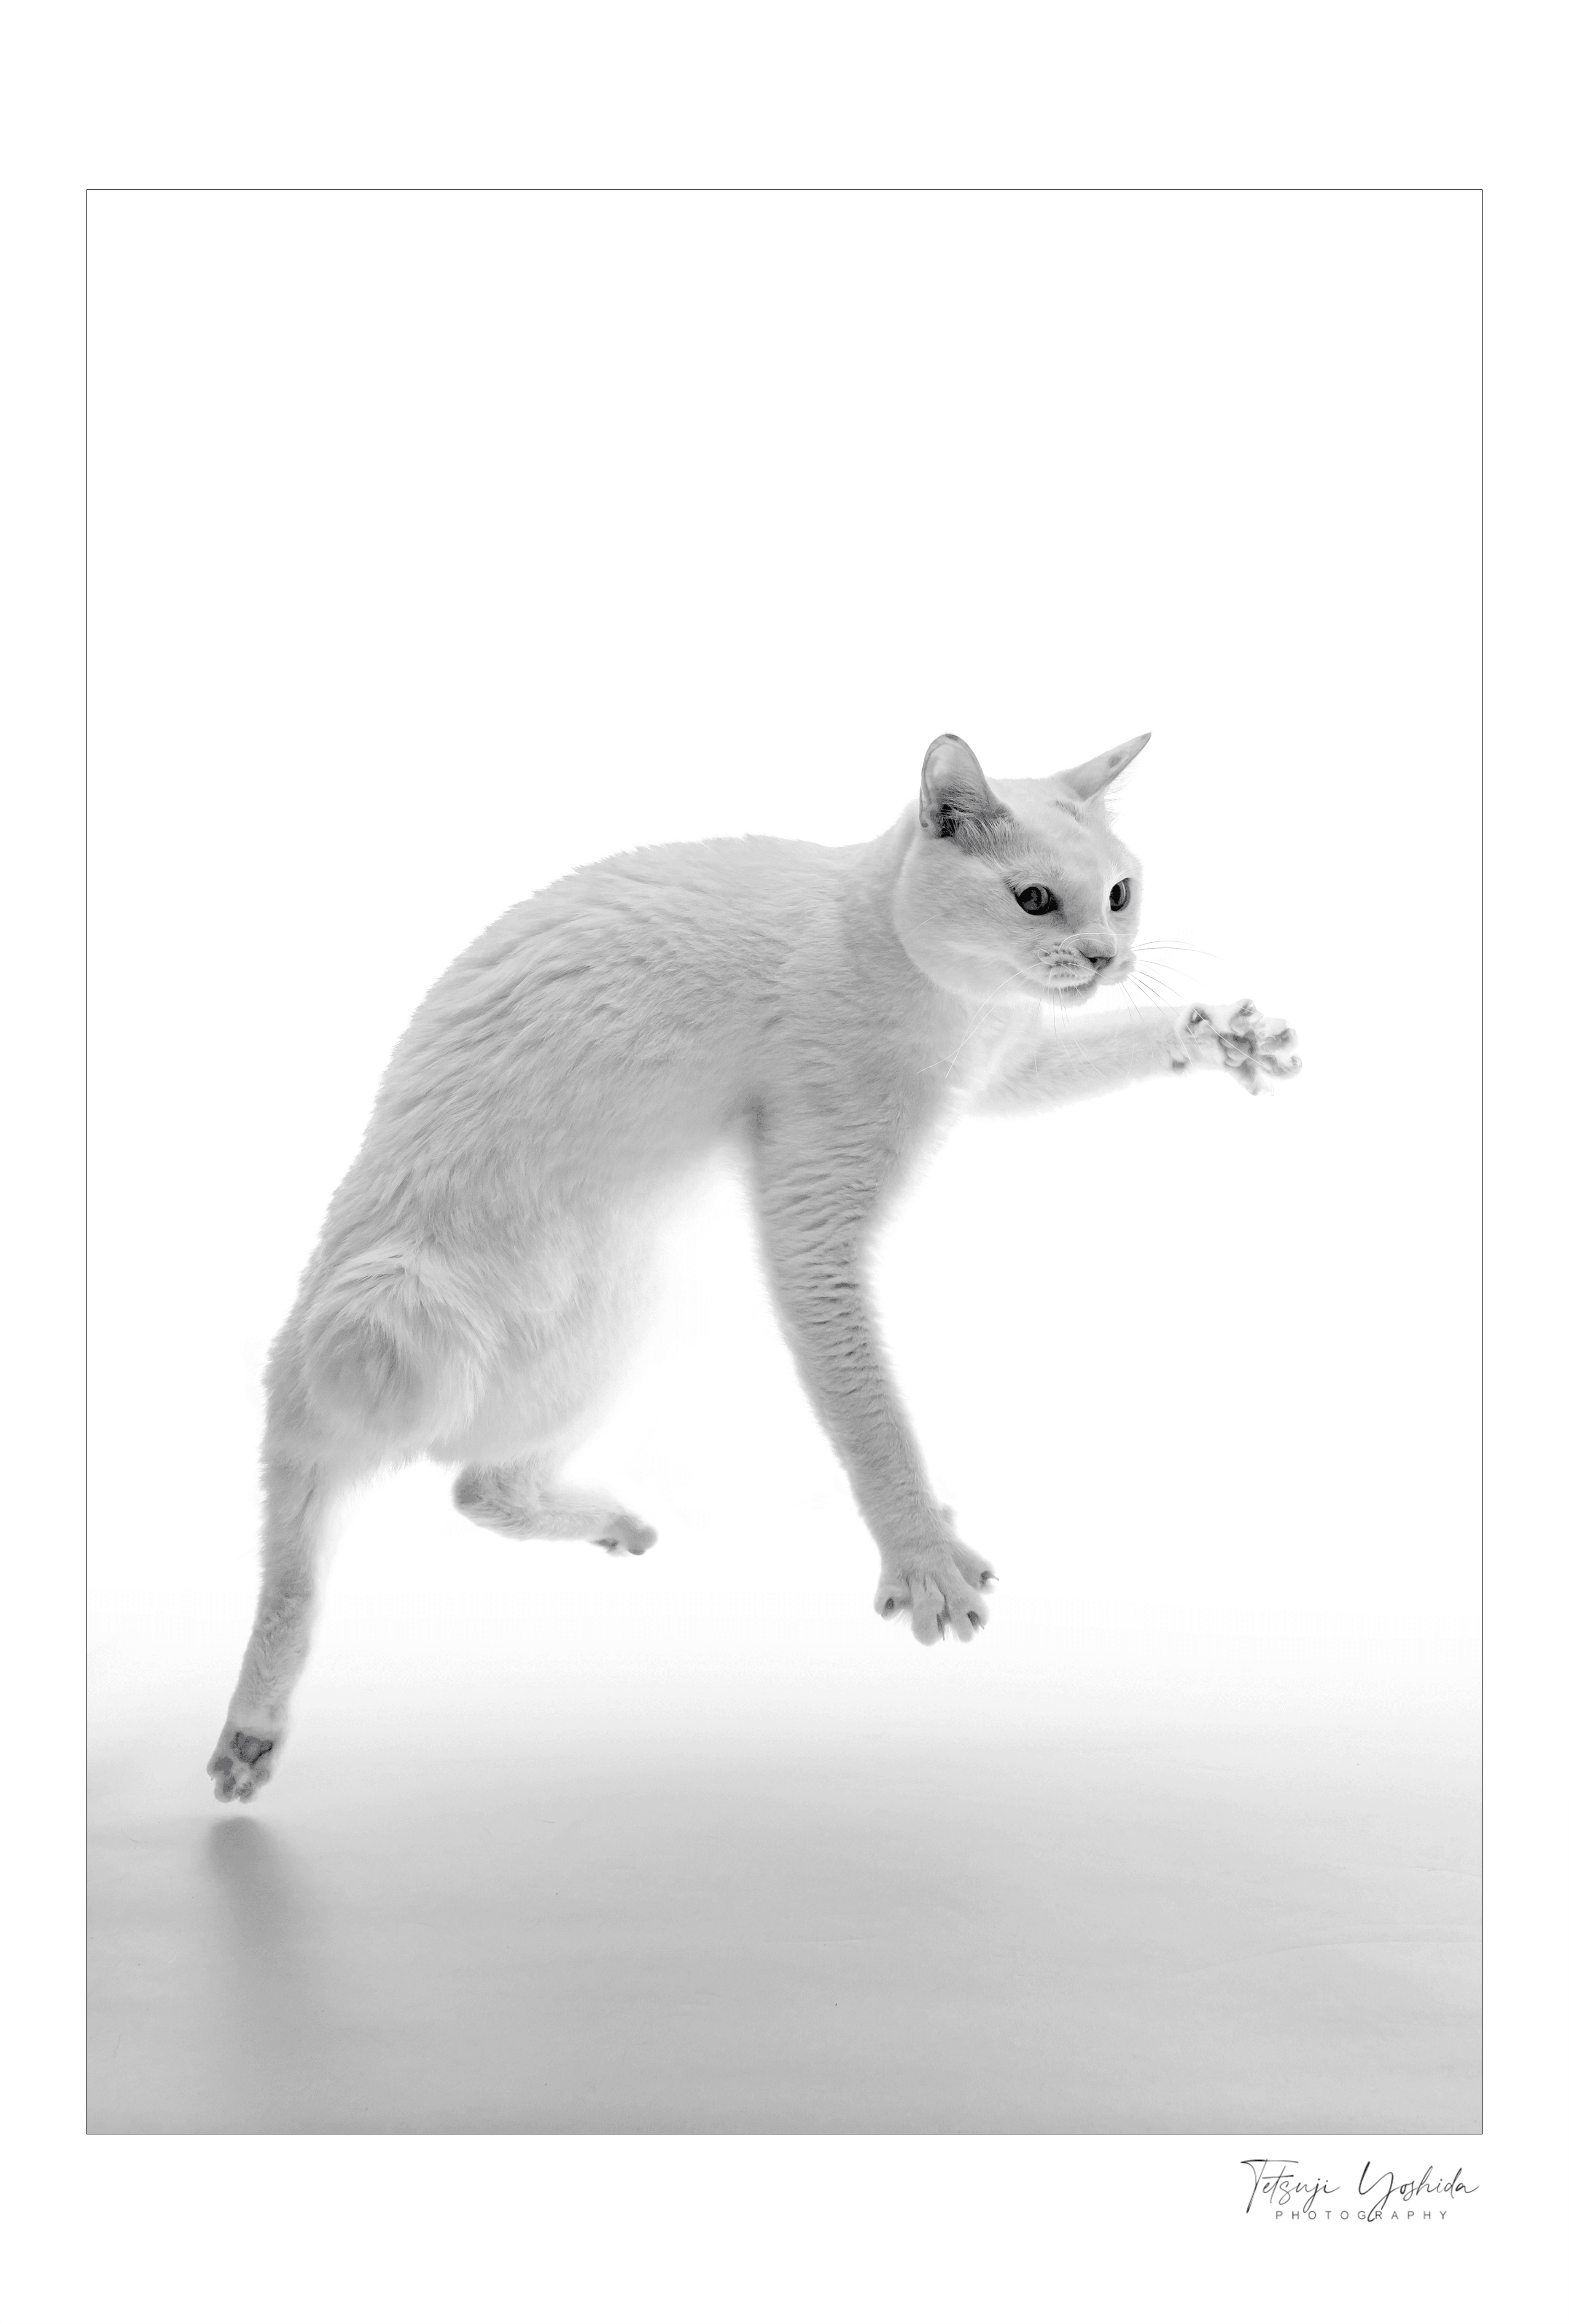 Teto-the-white-cat  "Jump"